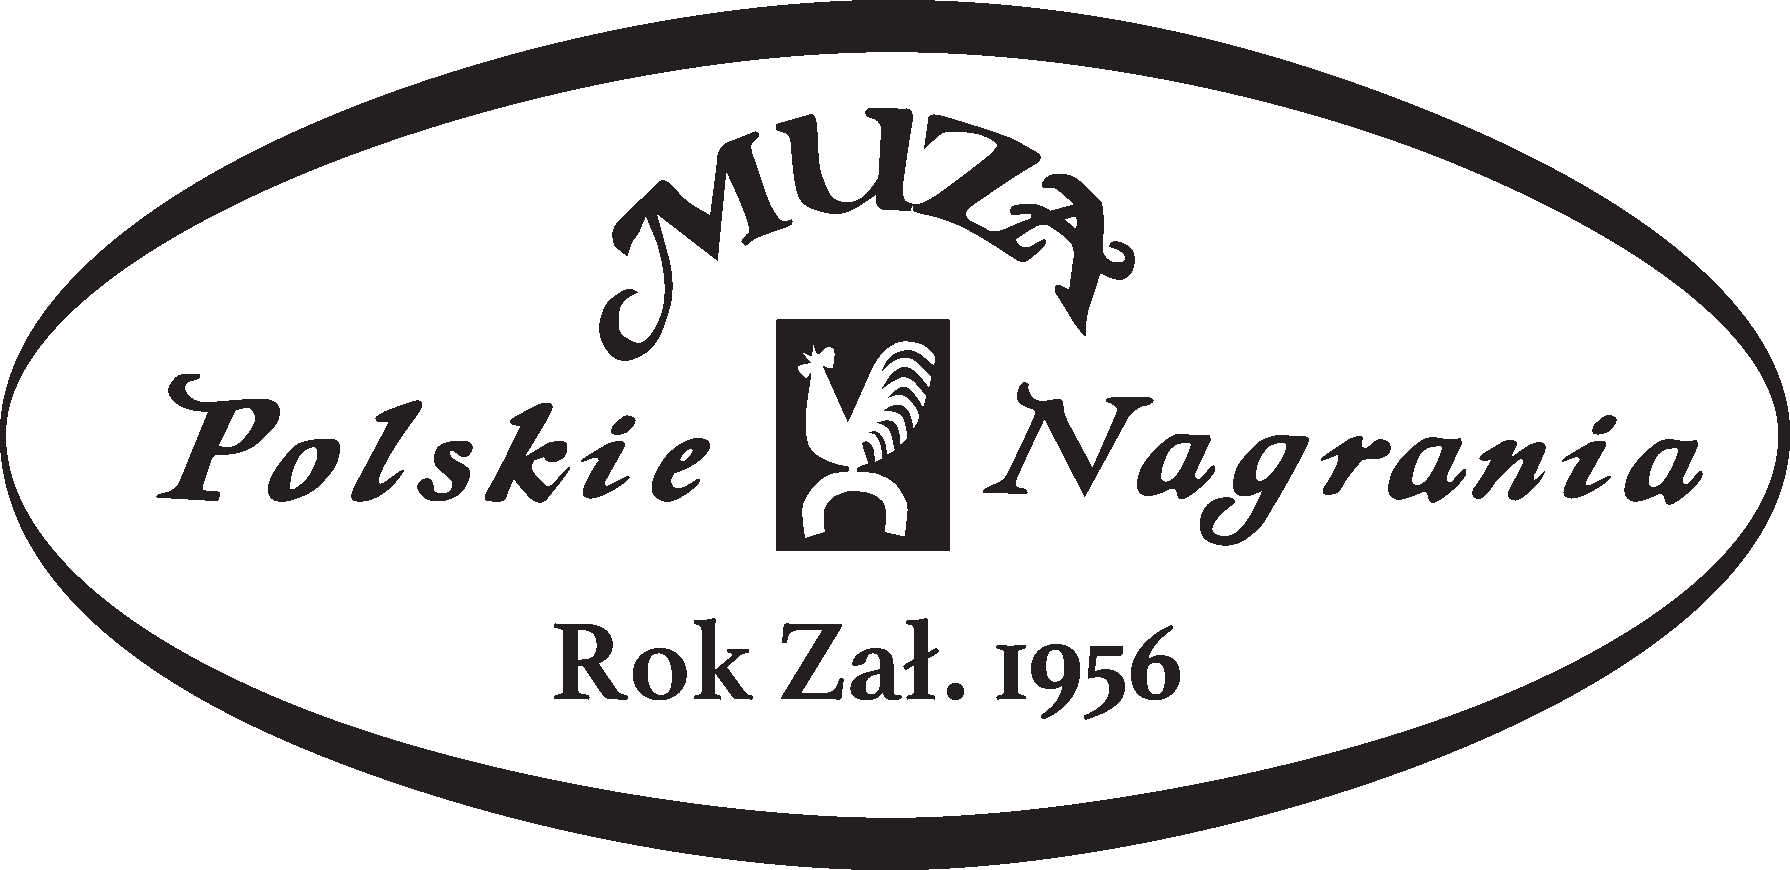 Logotyp Muza Polskie Nagrania